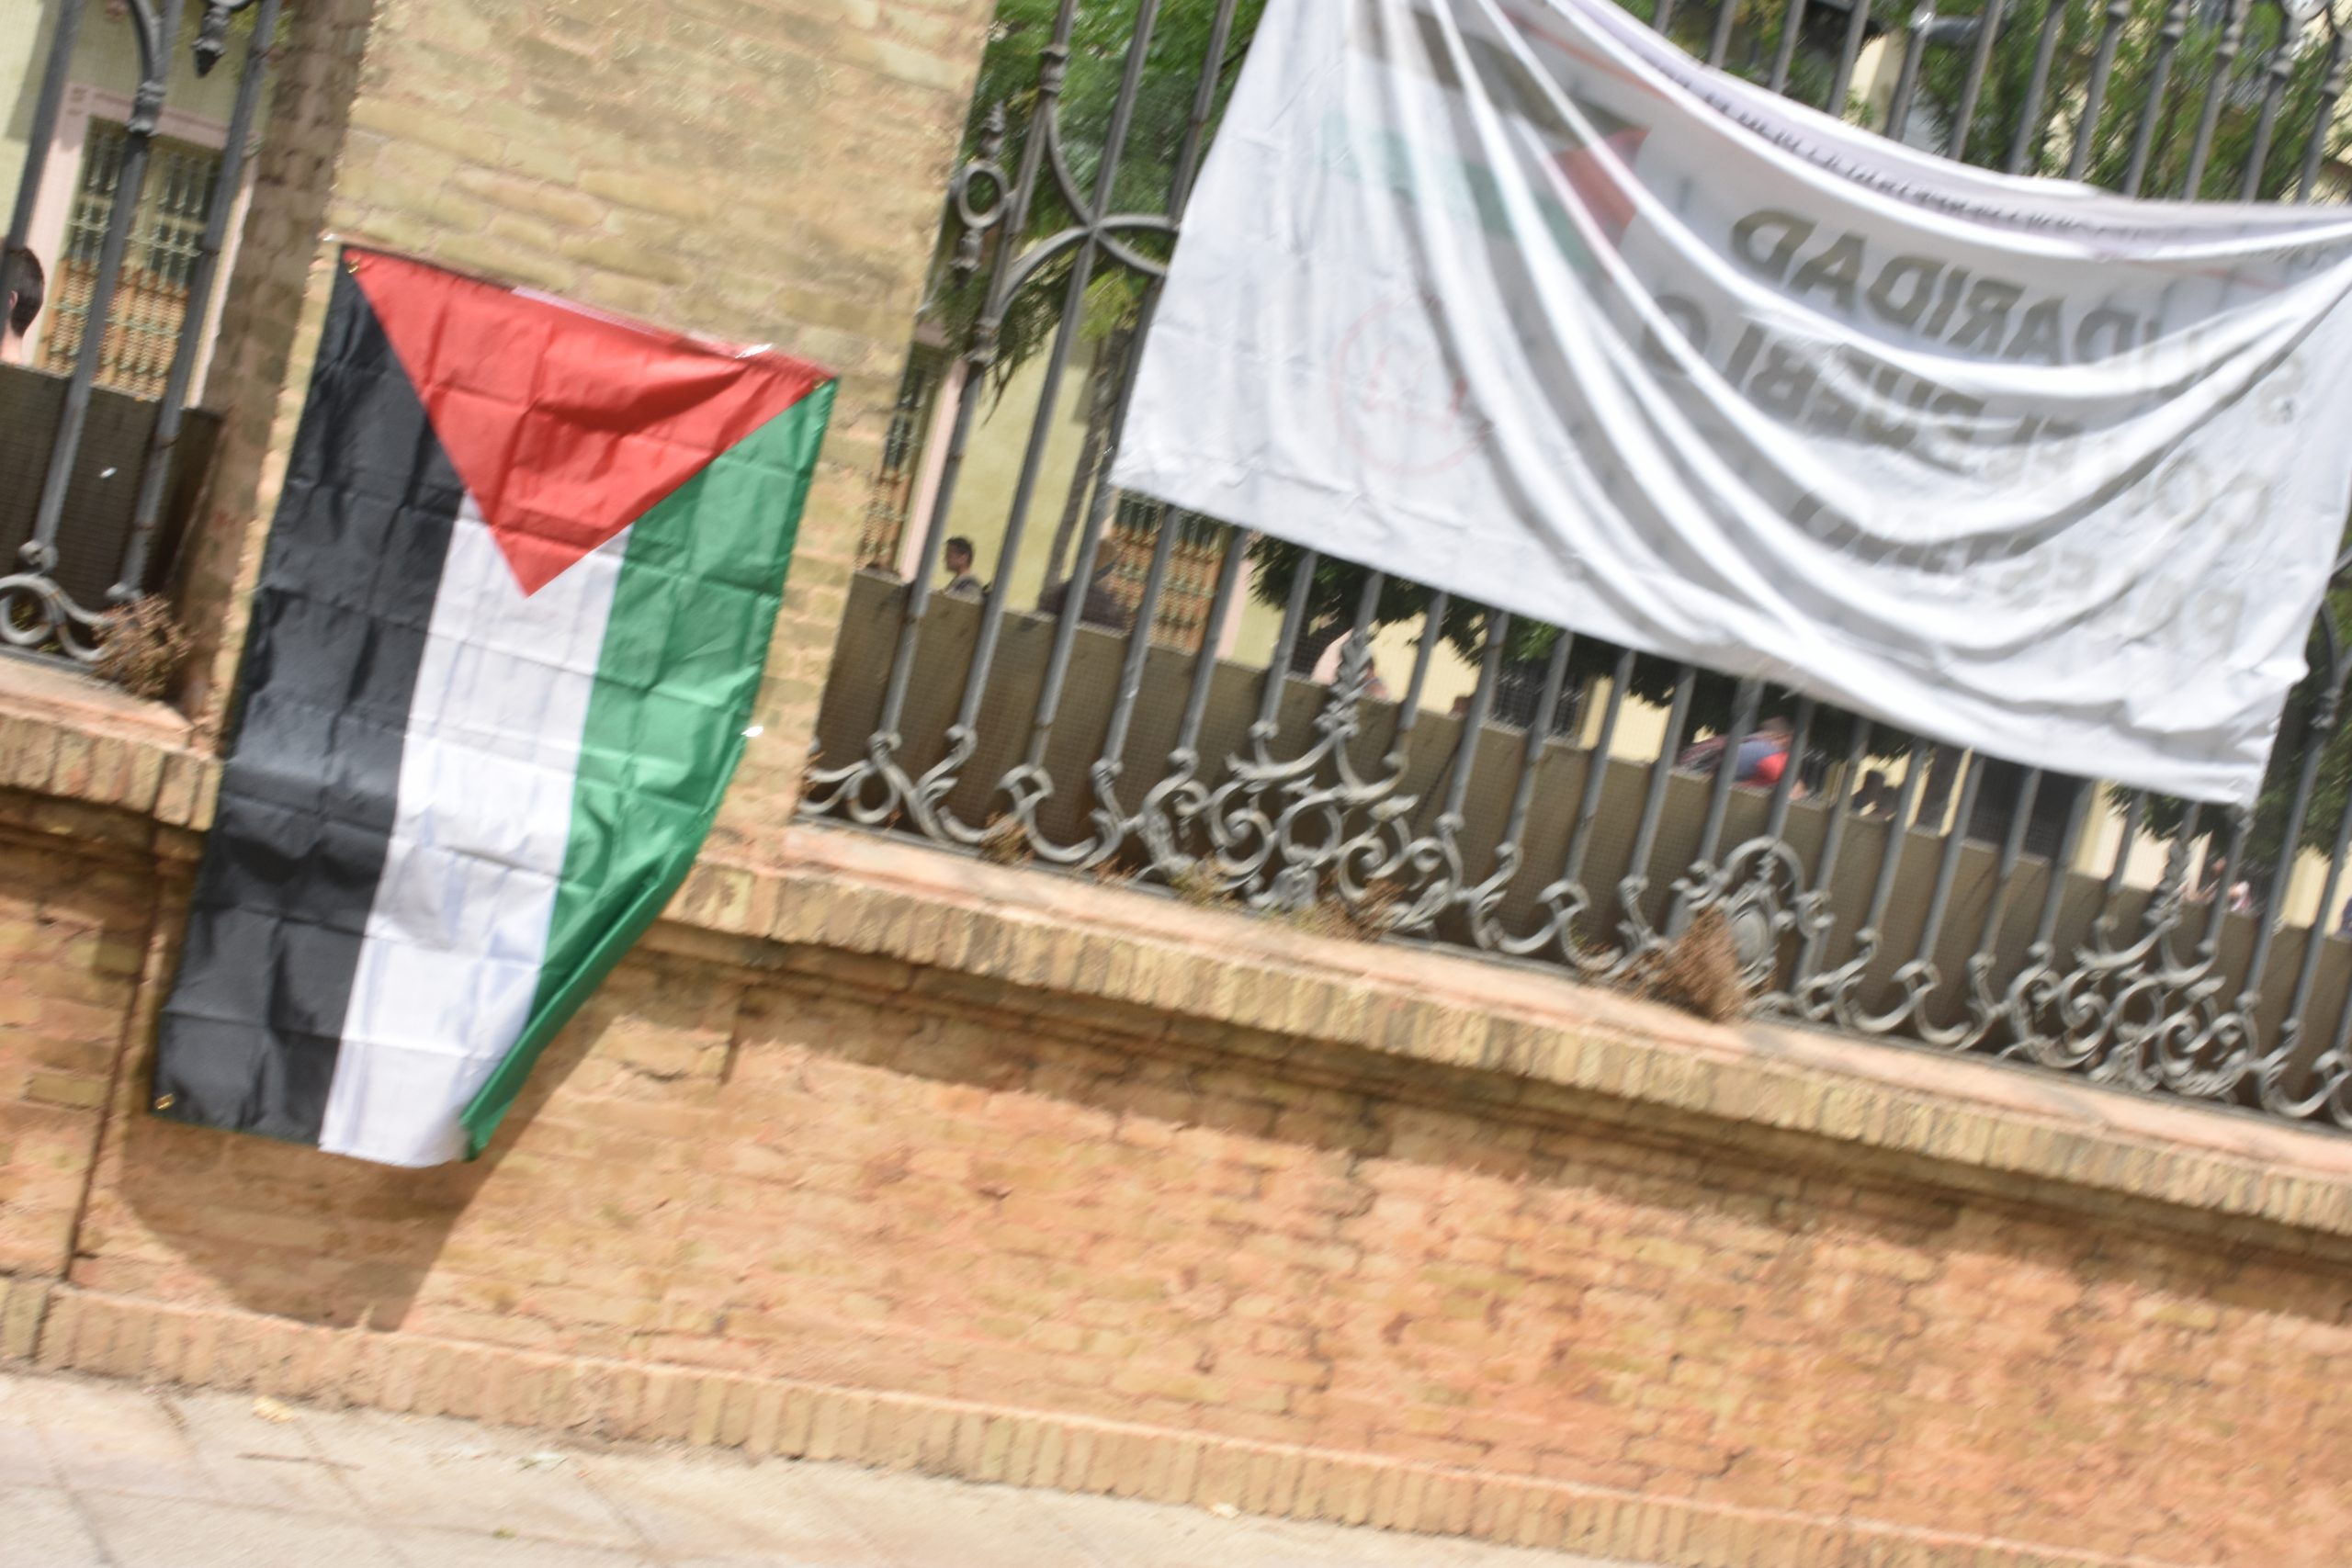 Bandera de Palestina en el Rectorado de la US (Universidad de Sevilla) durante las acampadas de los universitarios.